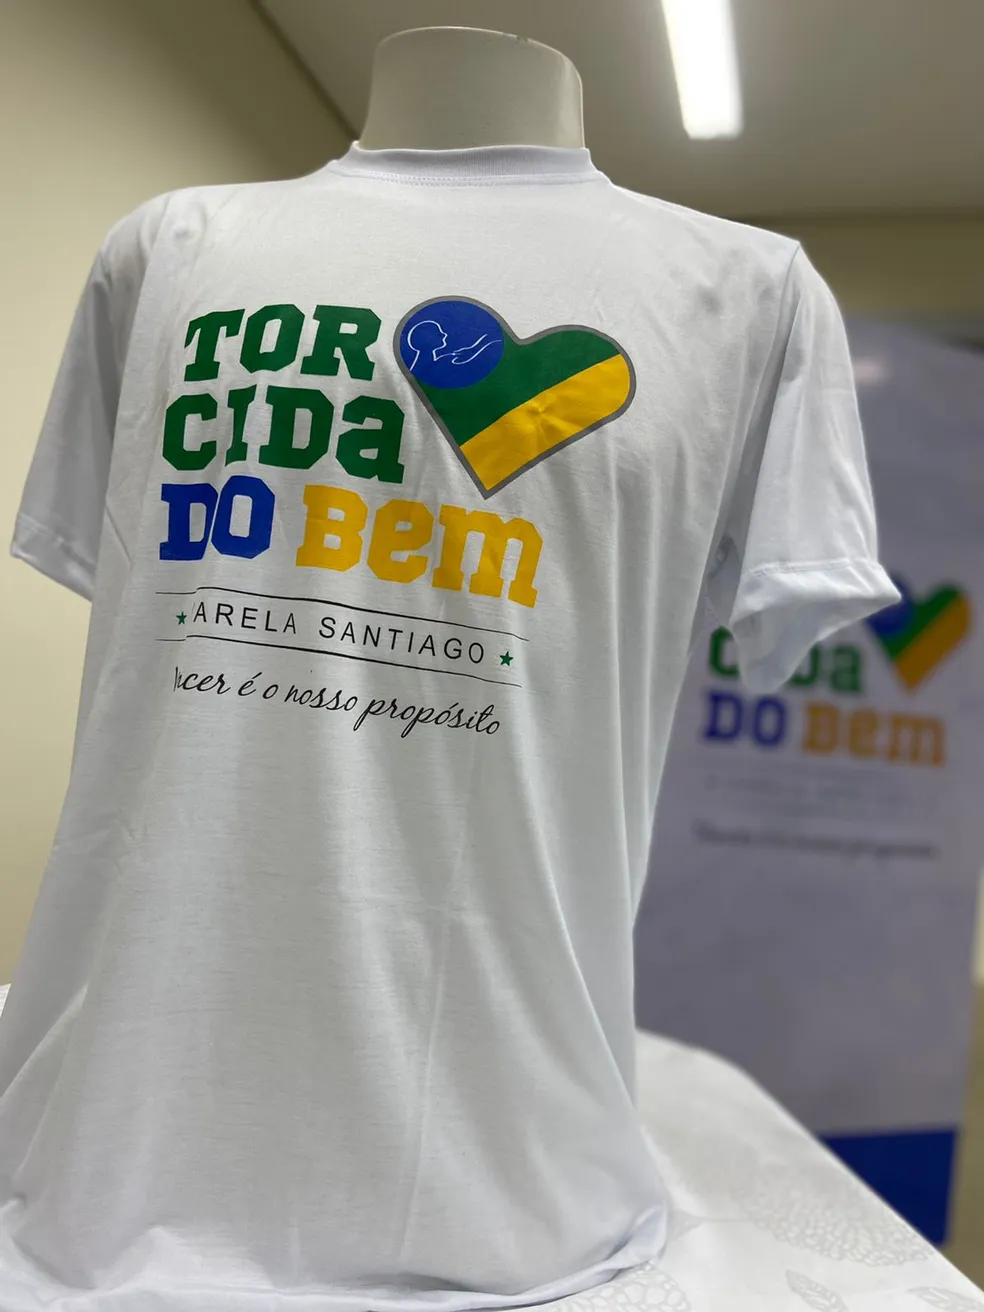 Hospital Varela Santiago lança campanha de venda de camisas com tema da Copa do Mundo para viabilizar construção de novo setor